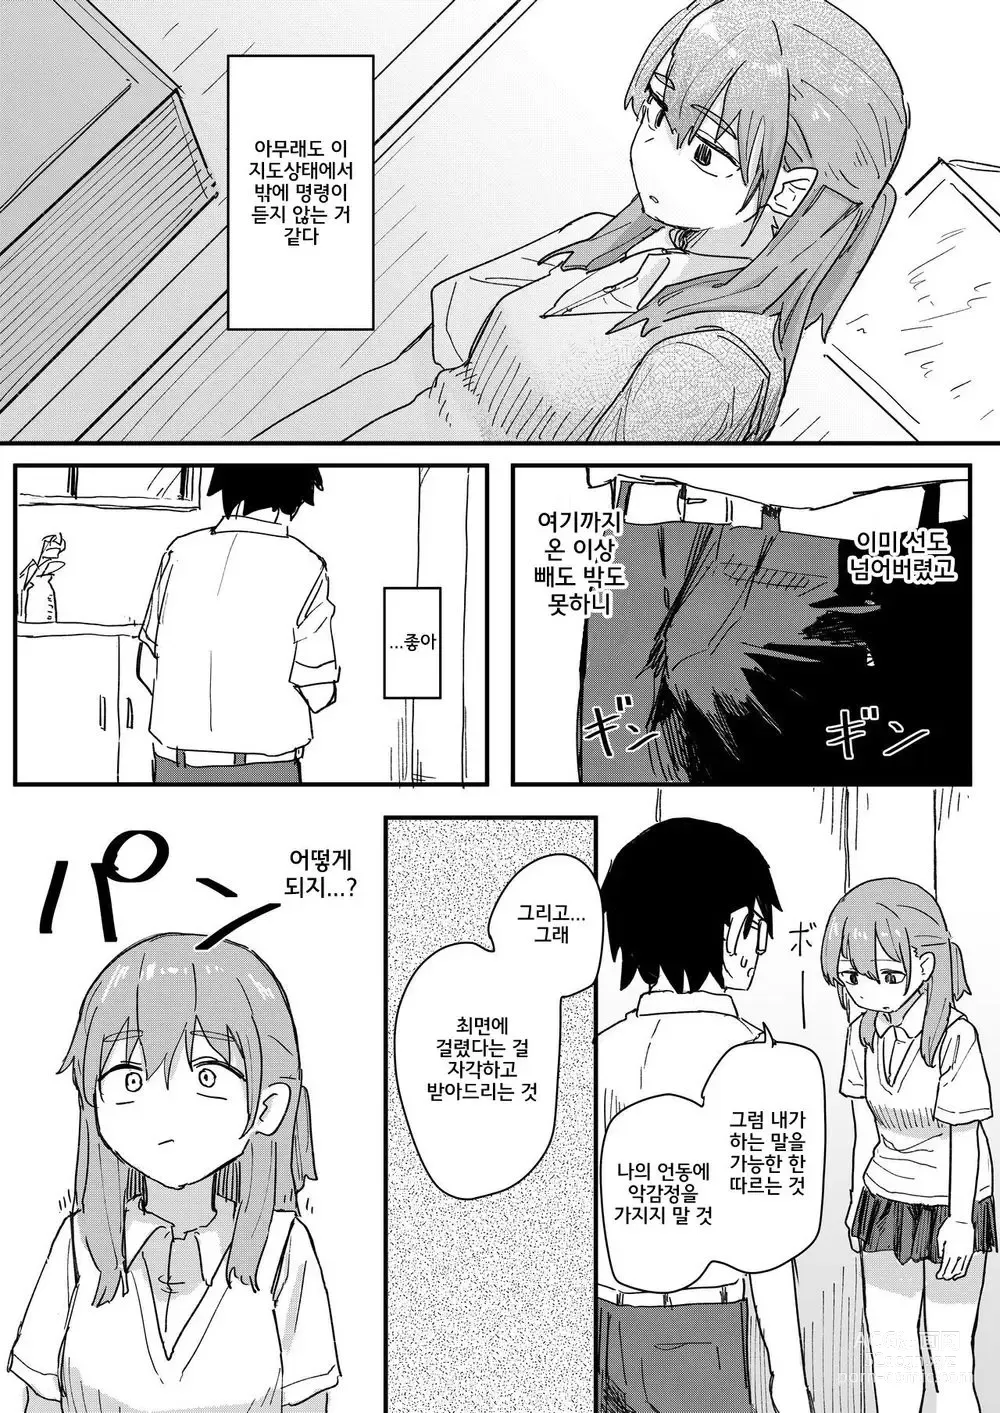 Page 14 of doujinshi 최면어플이 진짜일지도 모르기에 써봤다